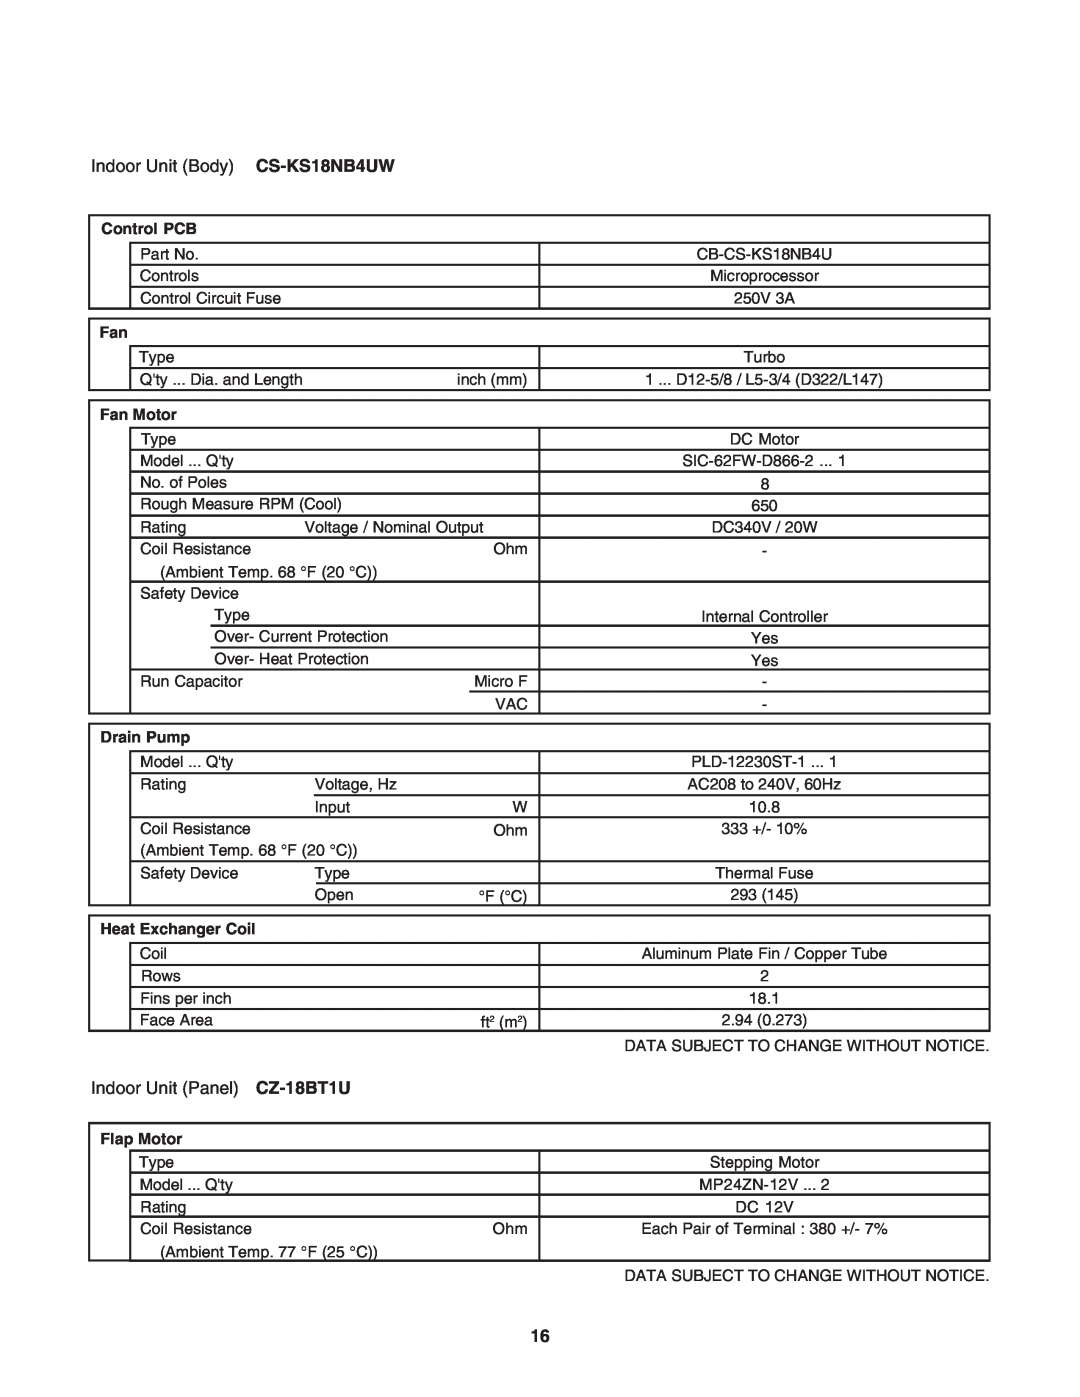 Panasonic R410A service manual Indoor Unit Body CS-KS18NB4UW, Indoor Unit Panel CZ-18BT1U 